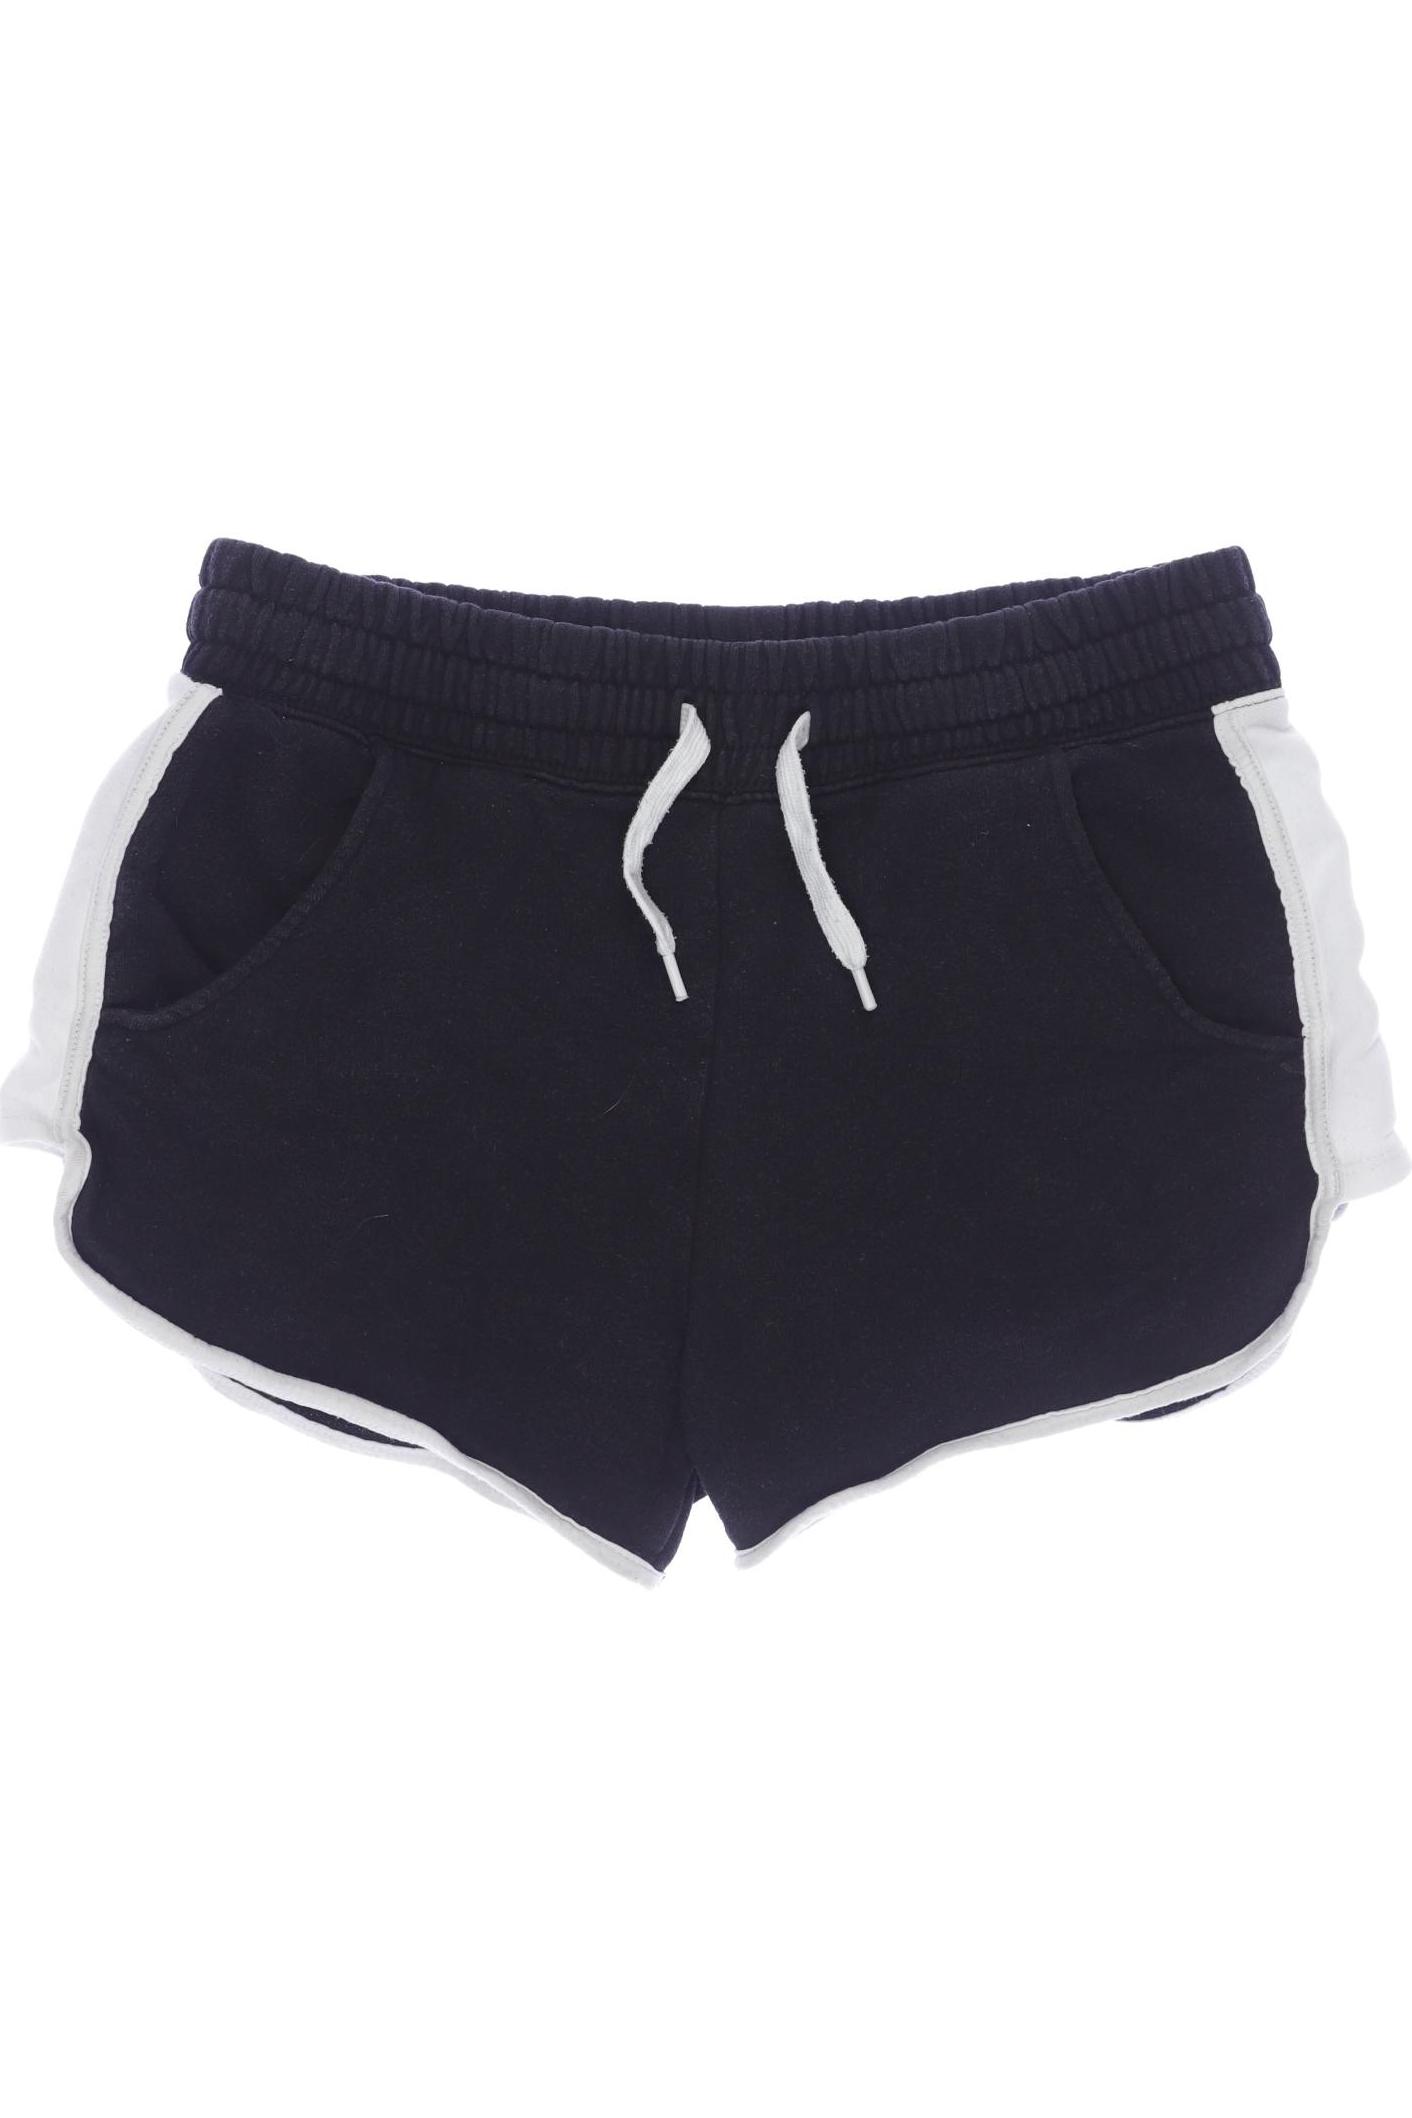 H&M Damen Shorts, schwarz, Gr. 164 von H&M